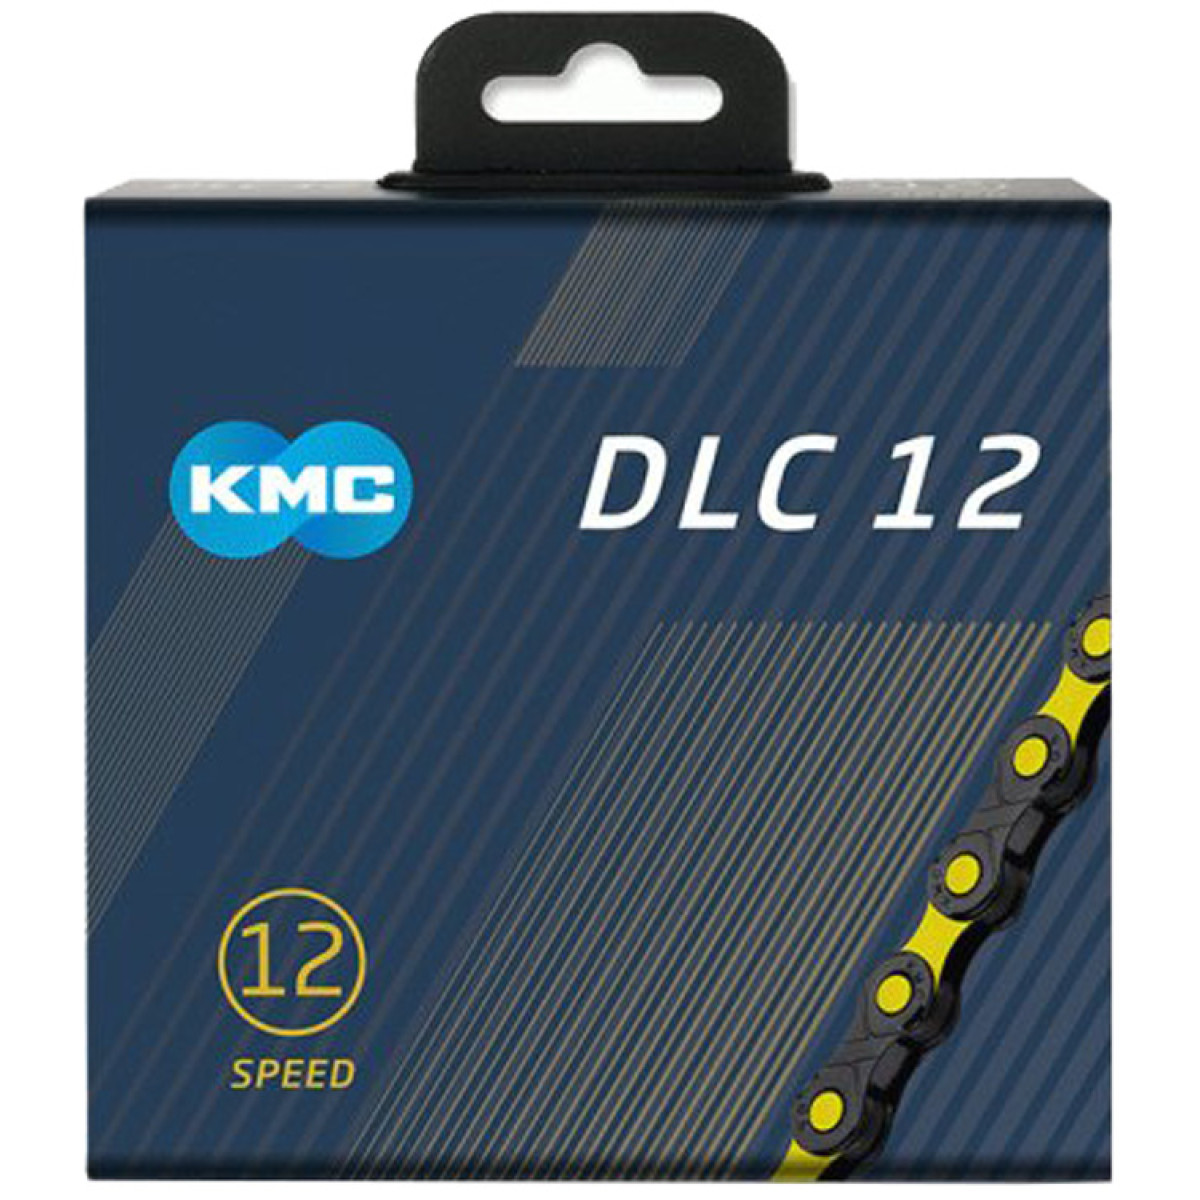 KMC DLC12 grandinė / 12 pavarų / Black-Yellow